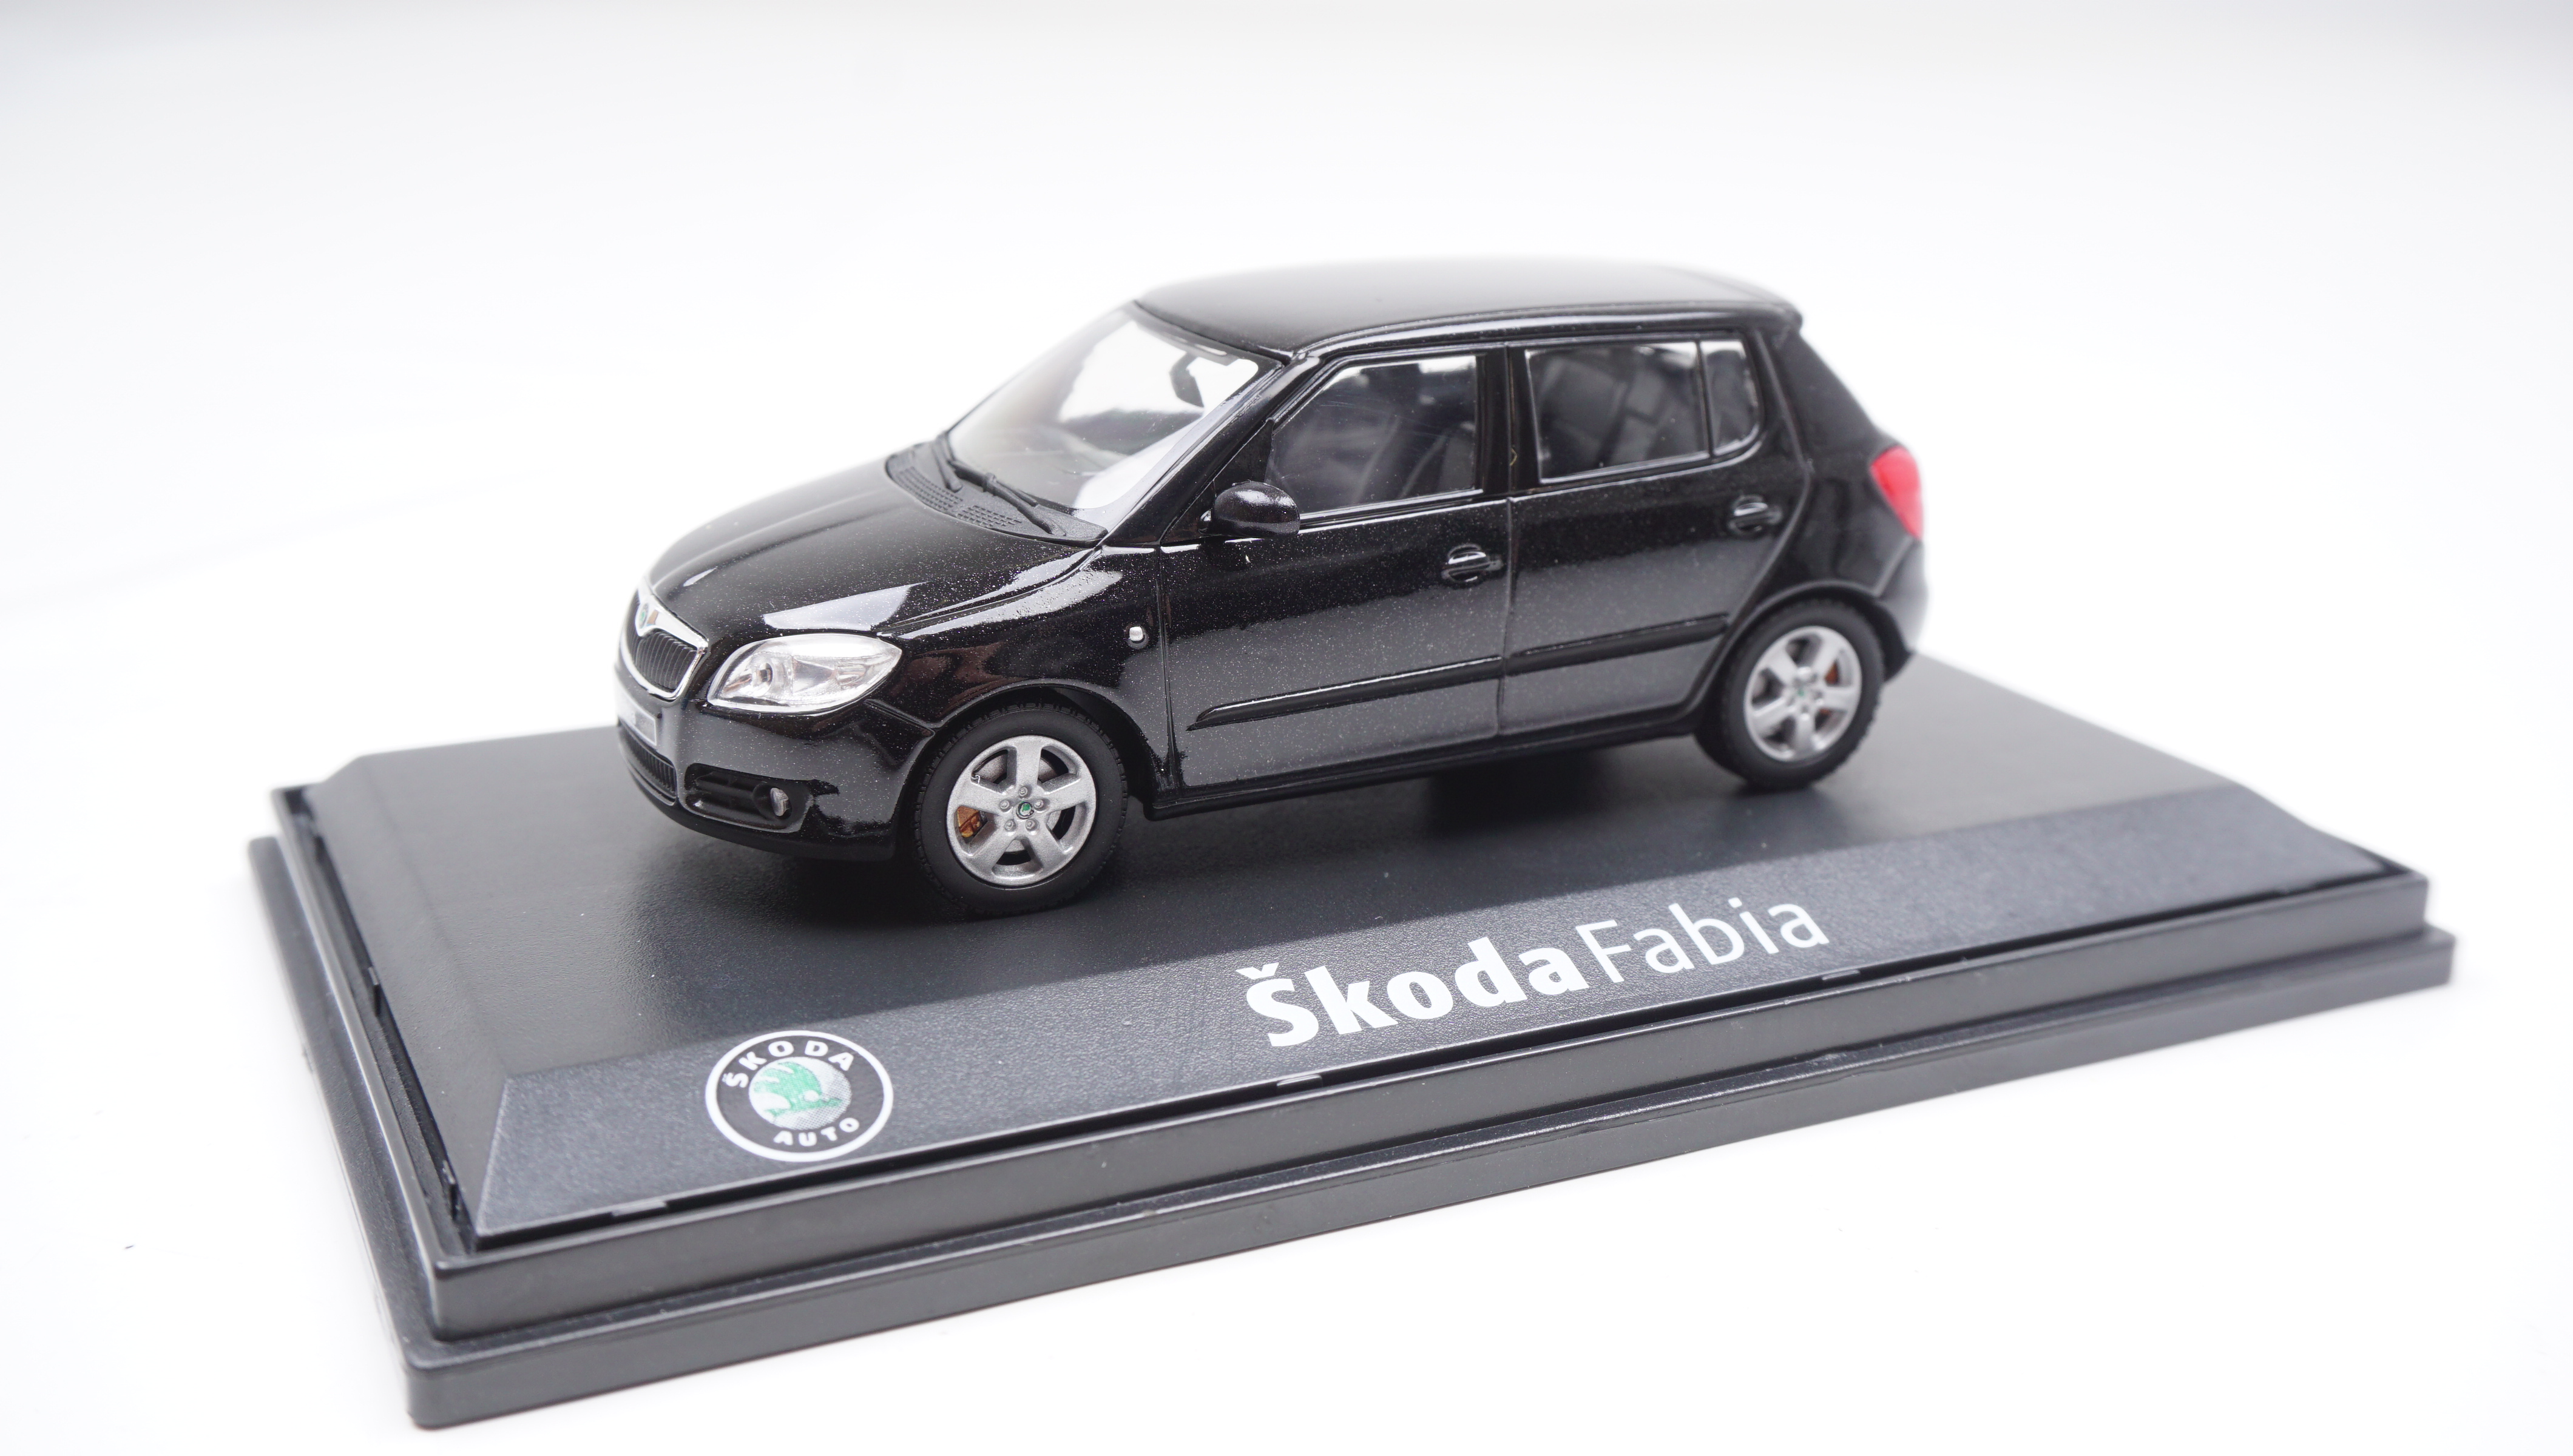 Modellauto Skoda Fabia II (schwarz)